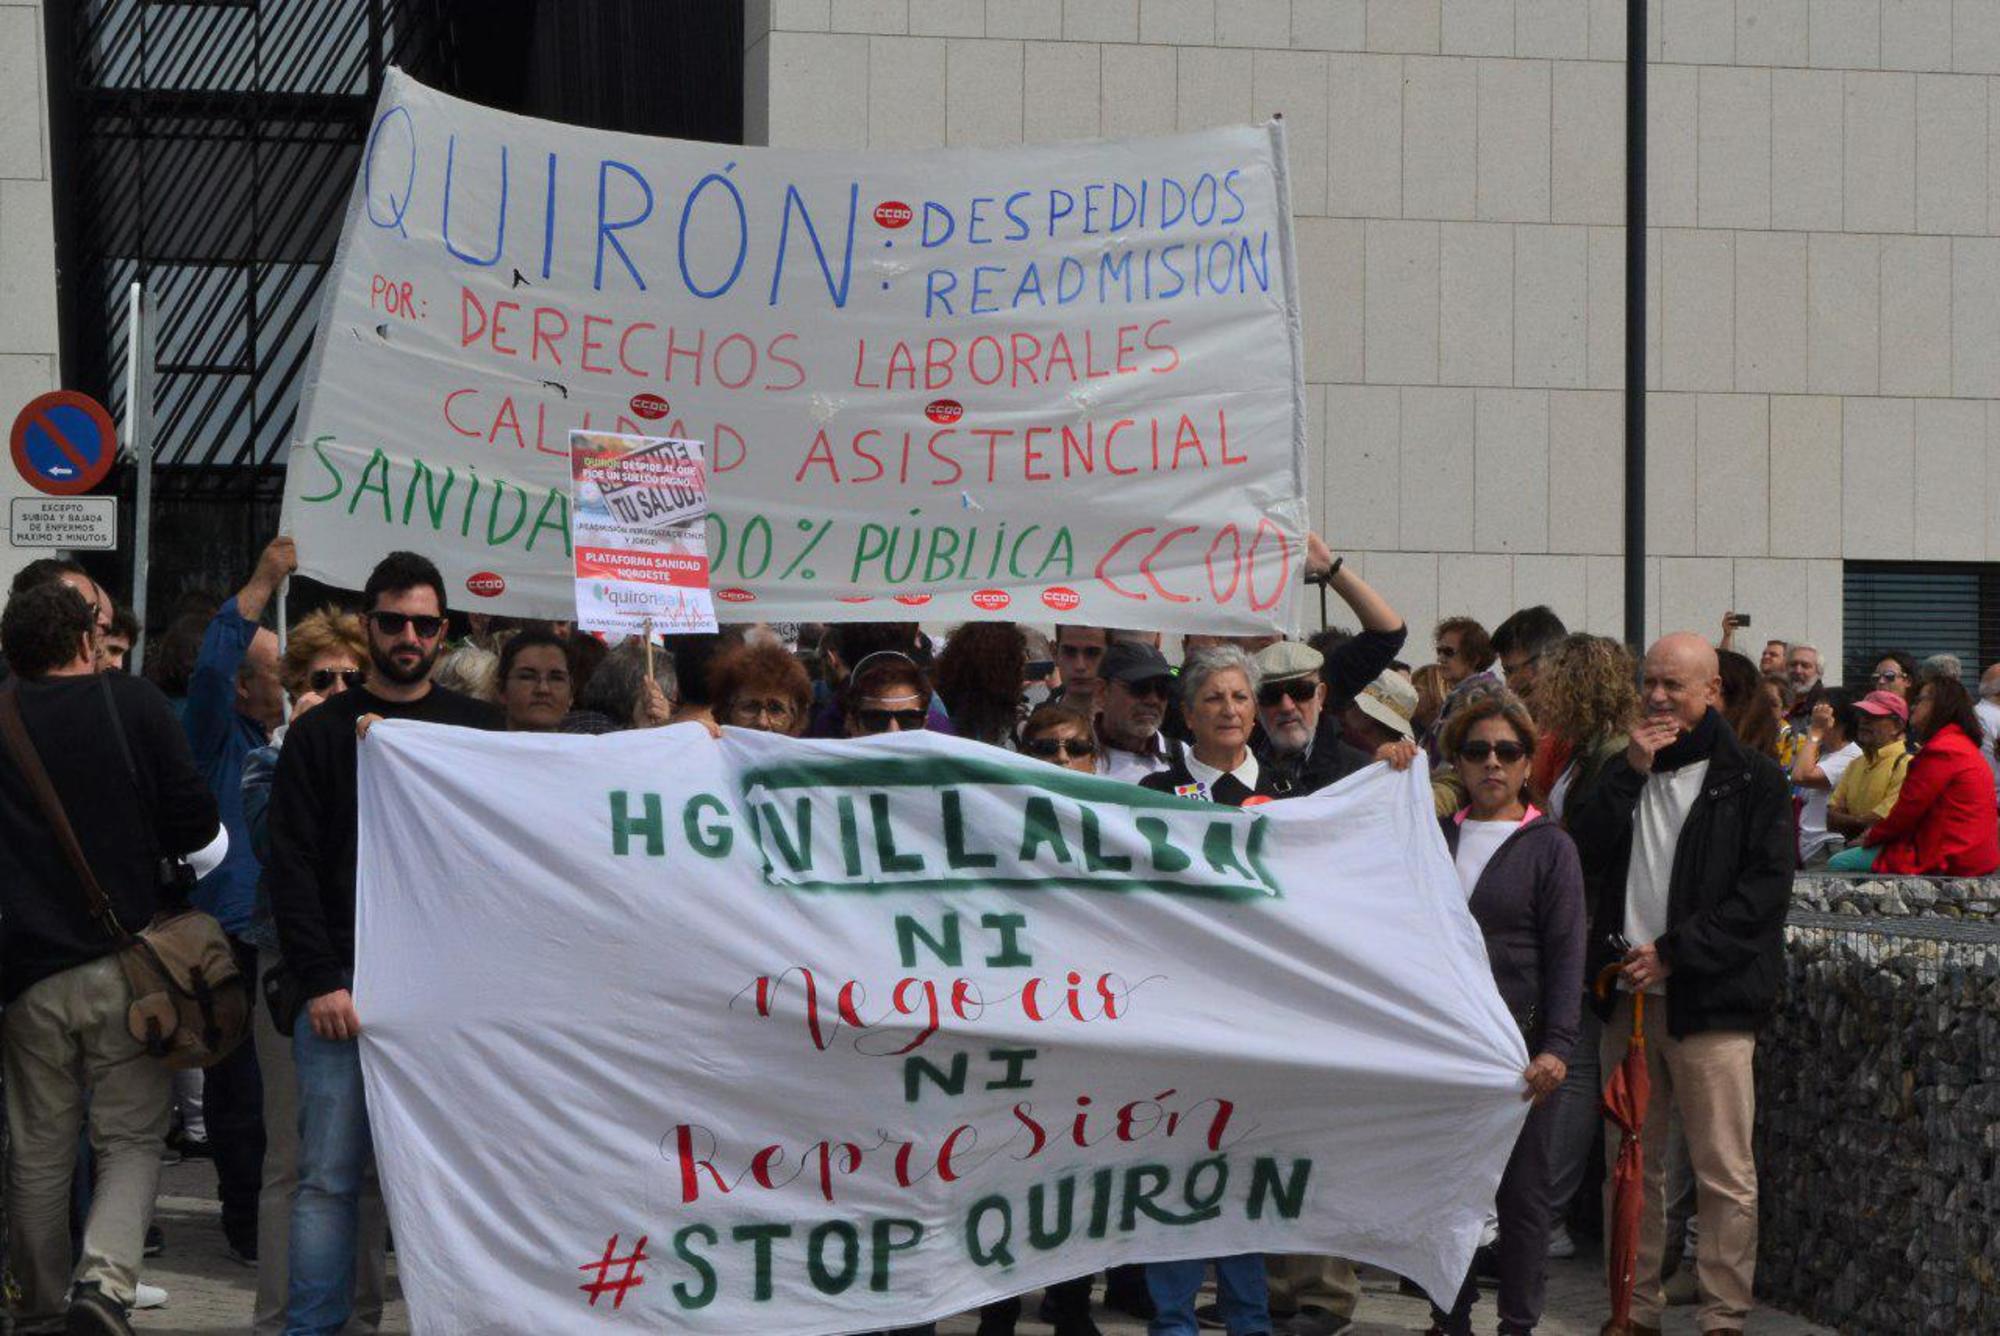 Protesta hospital villalba